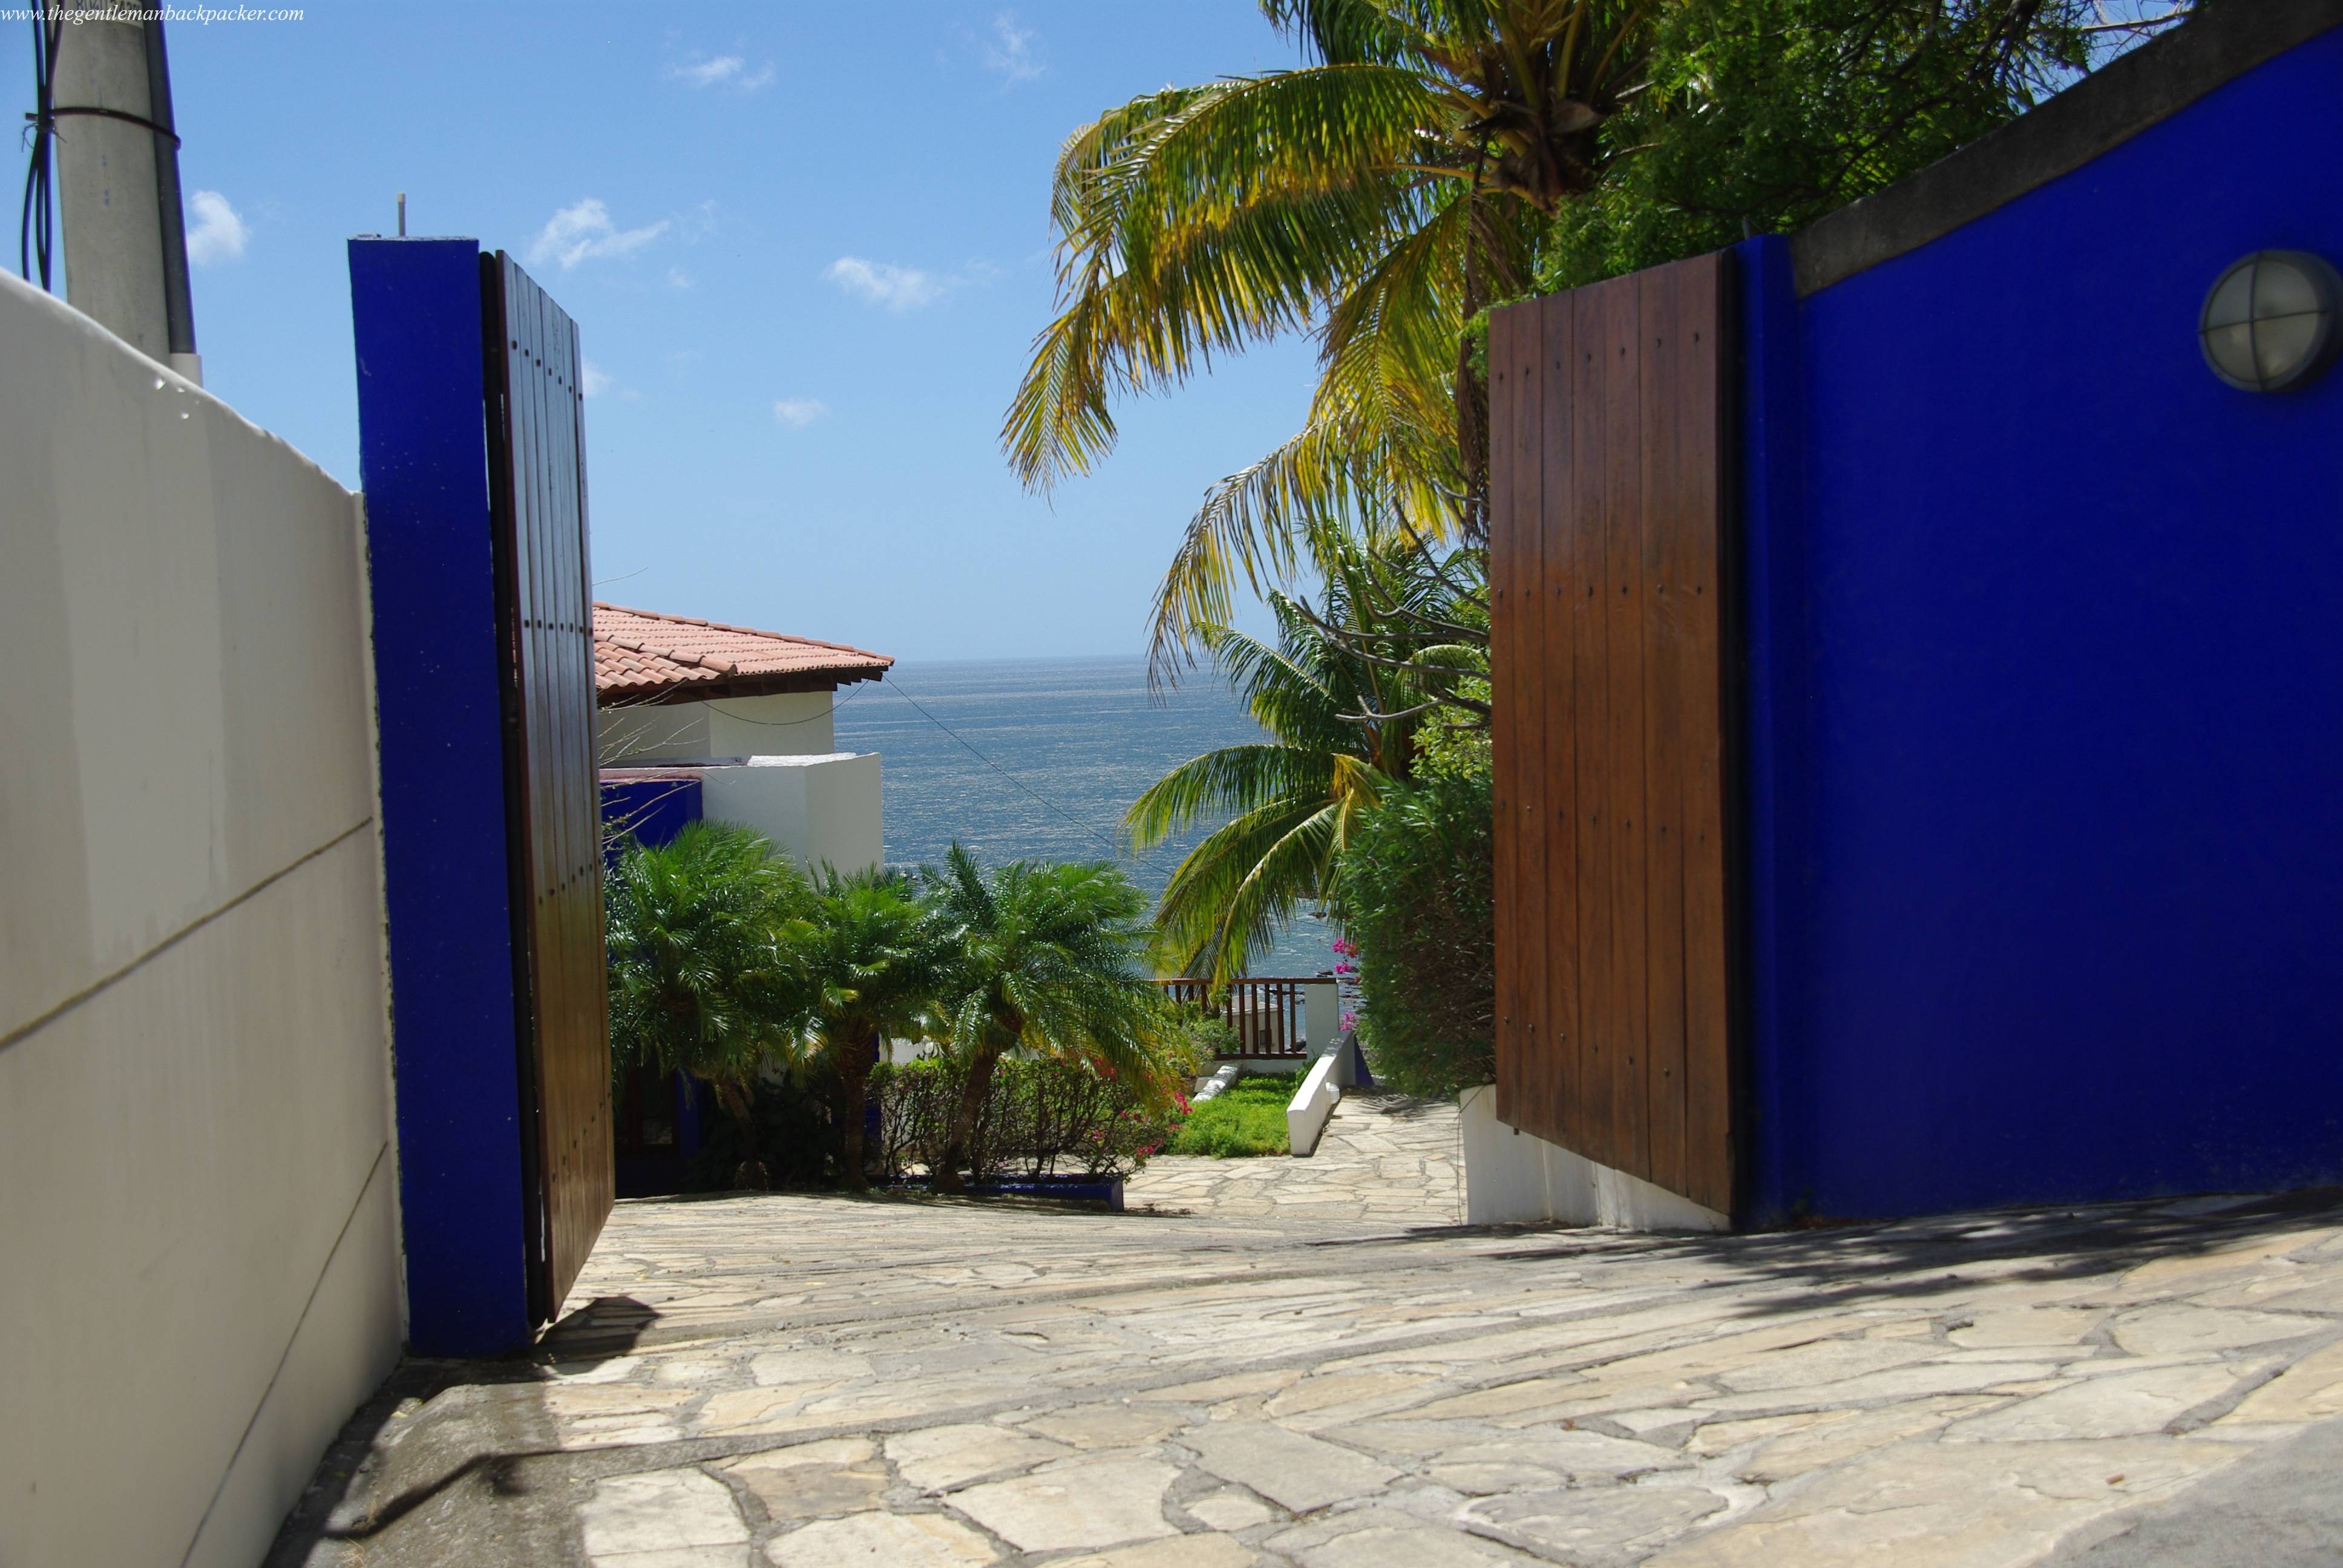 House gates, San Juan del Sur